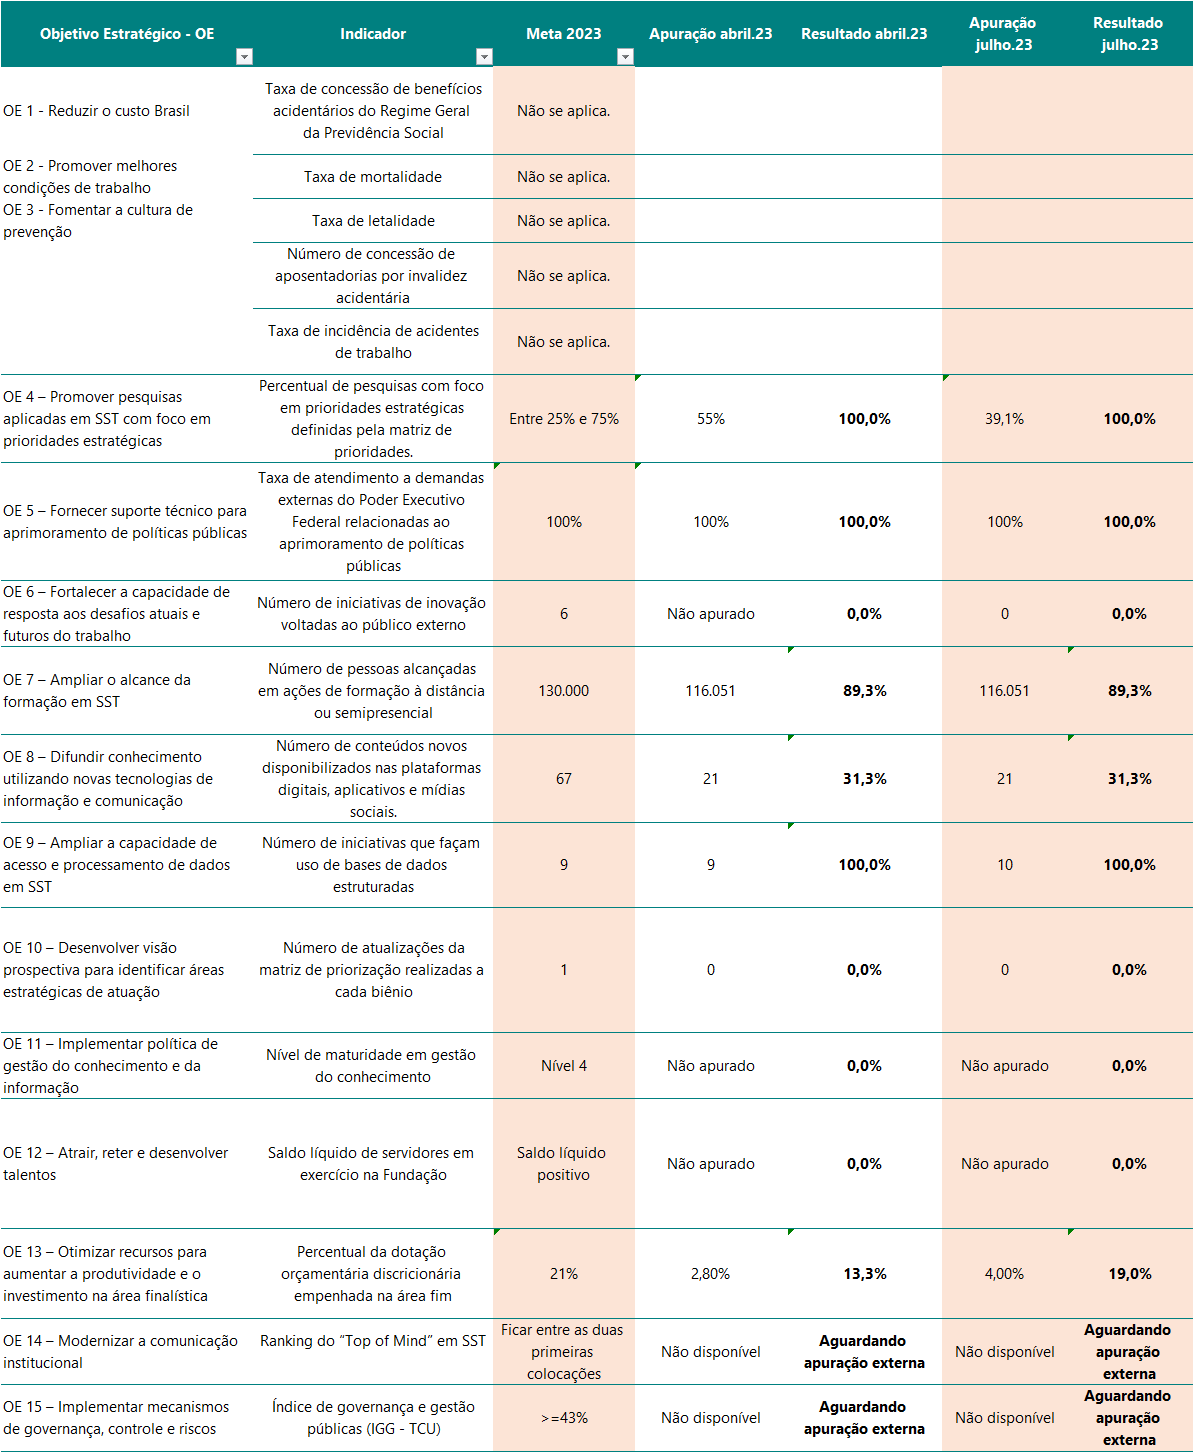 Tabela contendo apuração de indicadores dos objetivos estratégicos (jul/23)